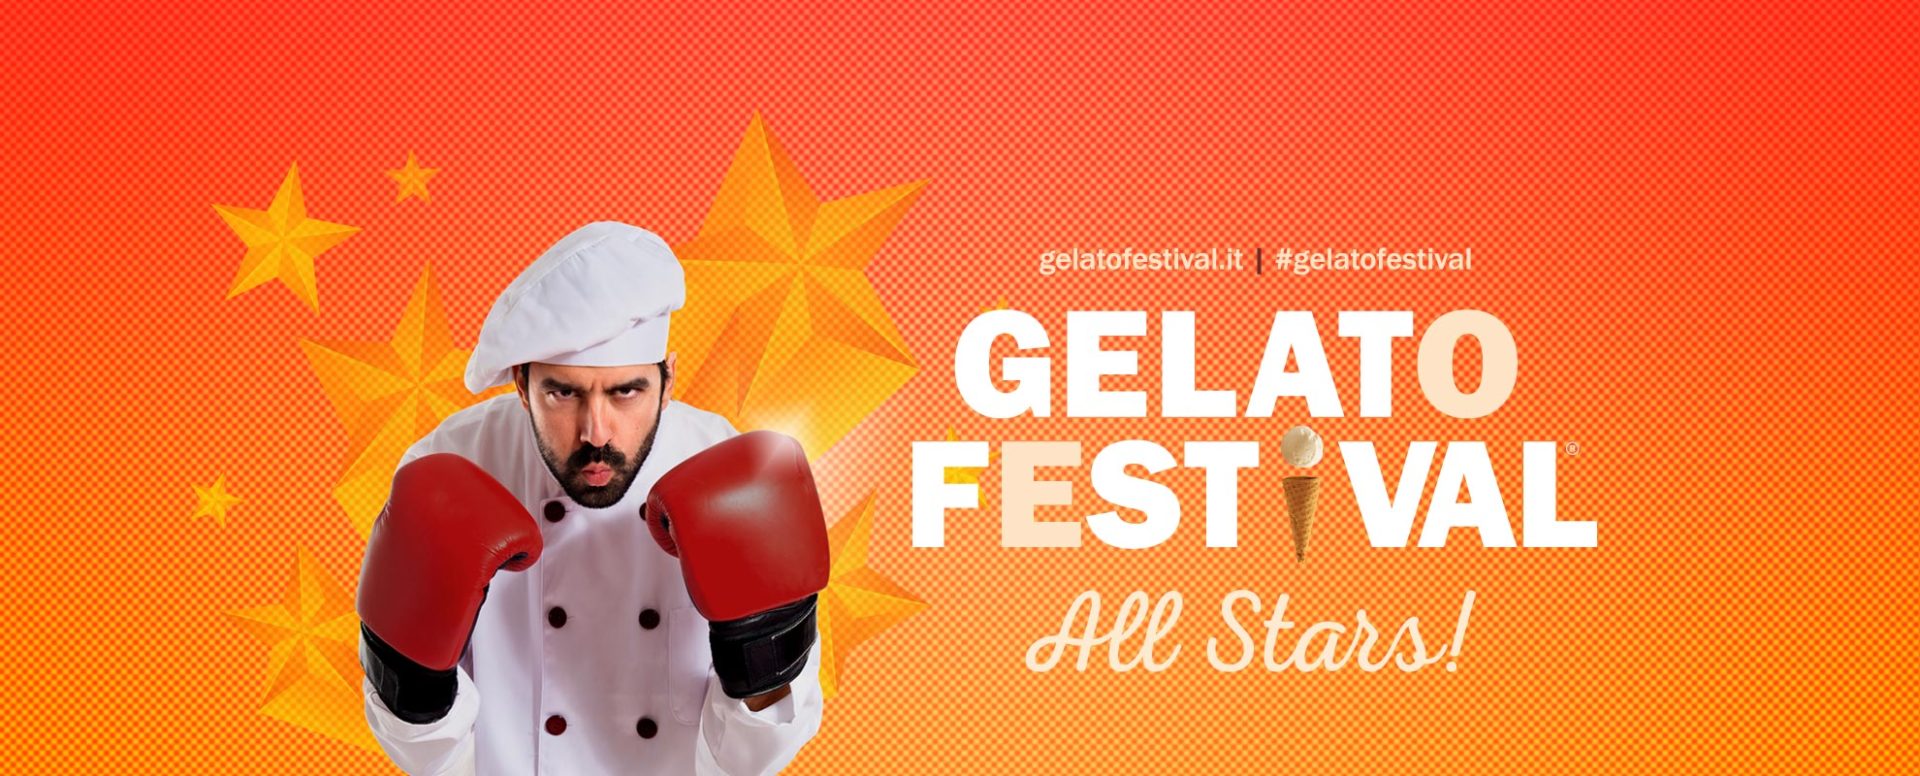 Gelato Festival All Stars 14-16 Settembre